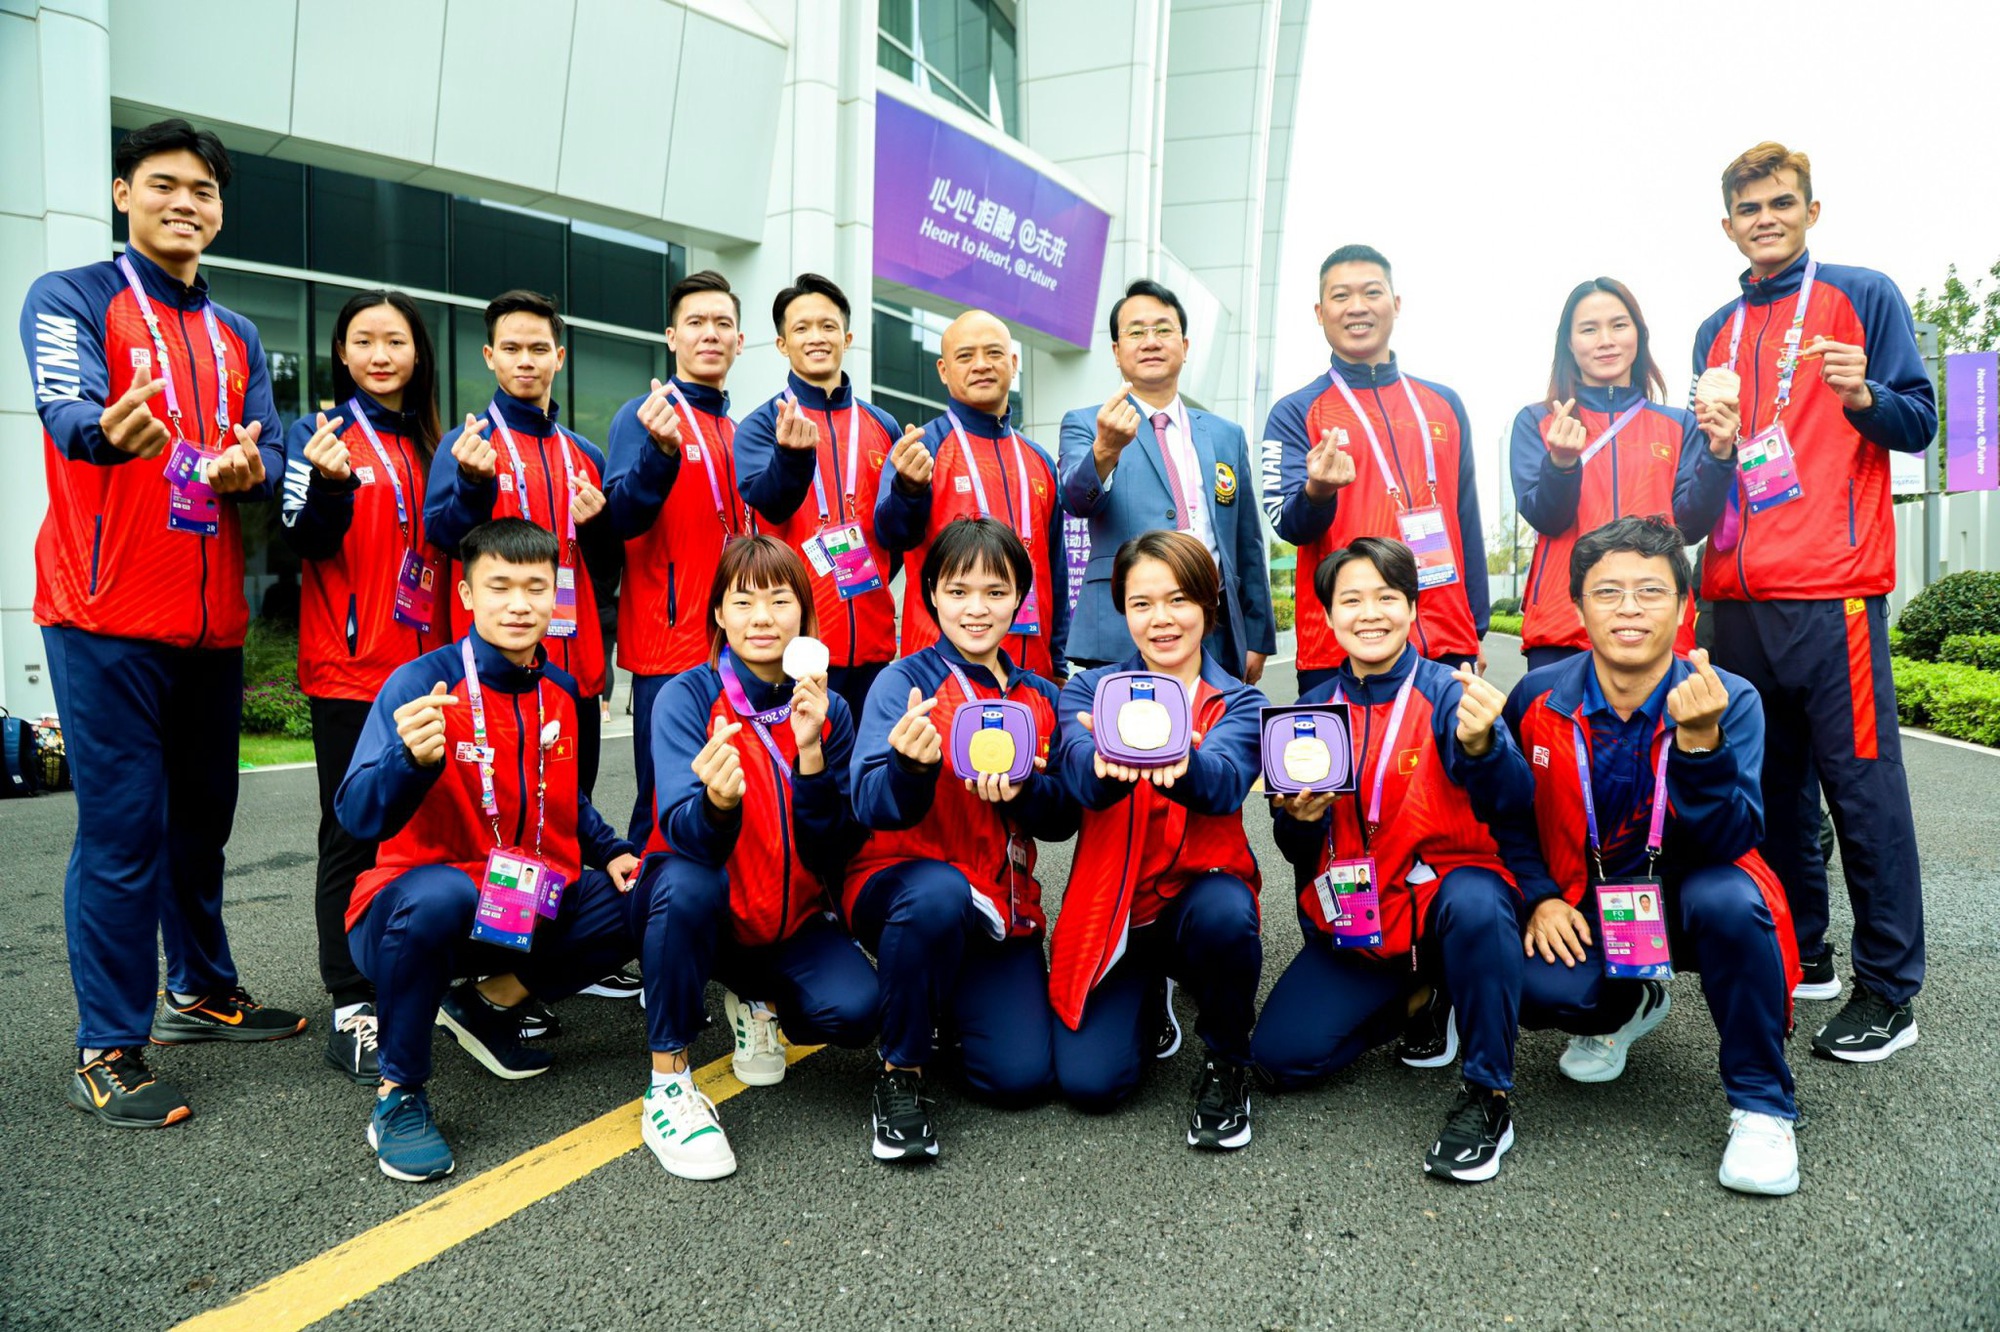 Bảng tổng sắp huy chương ASIAD 19: Đoàn Thể thao Việt Nam giành 27 huy chương các loại - Ảnh 1.